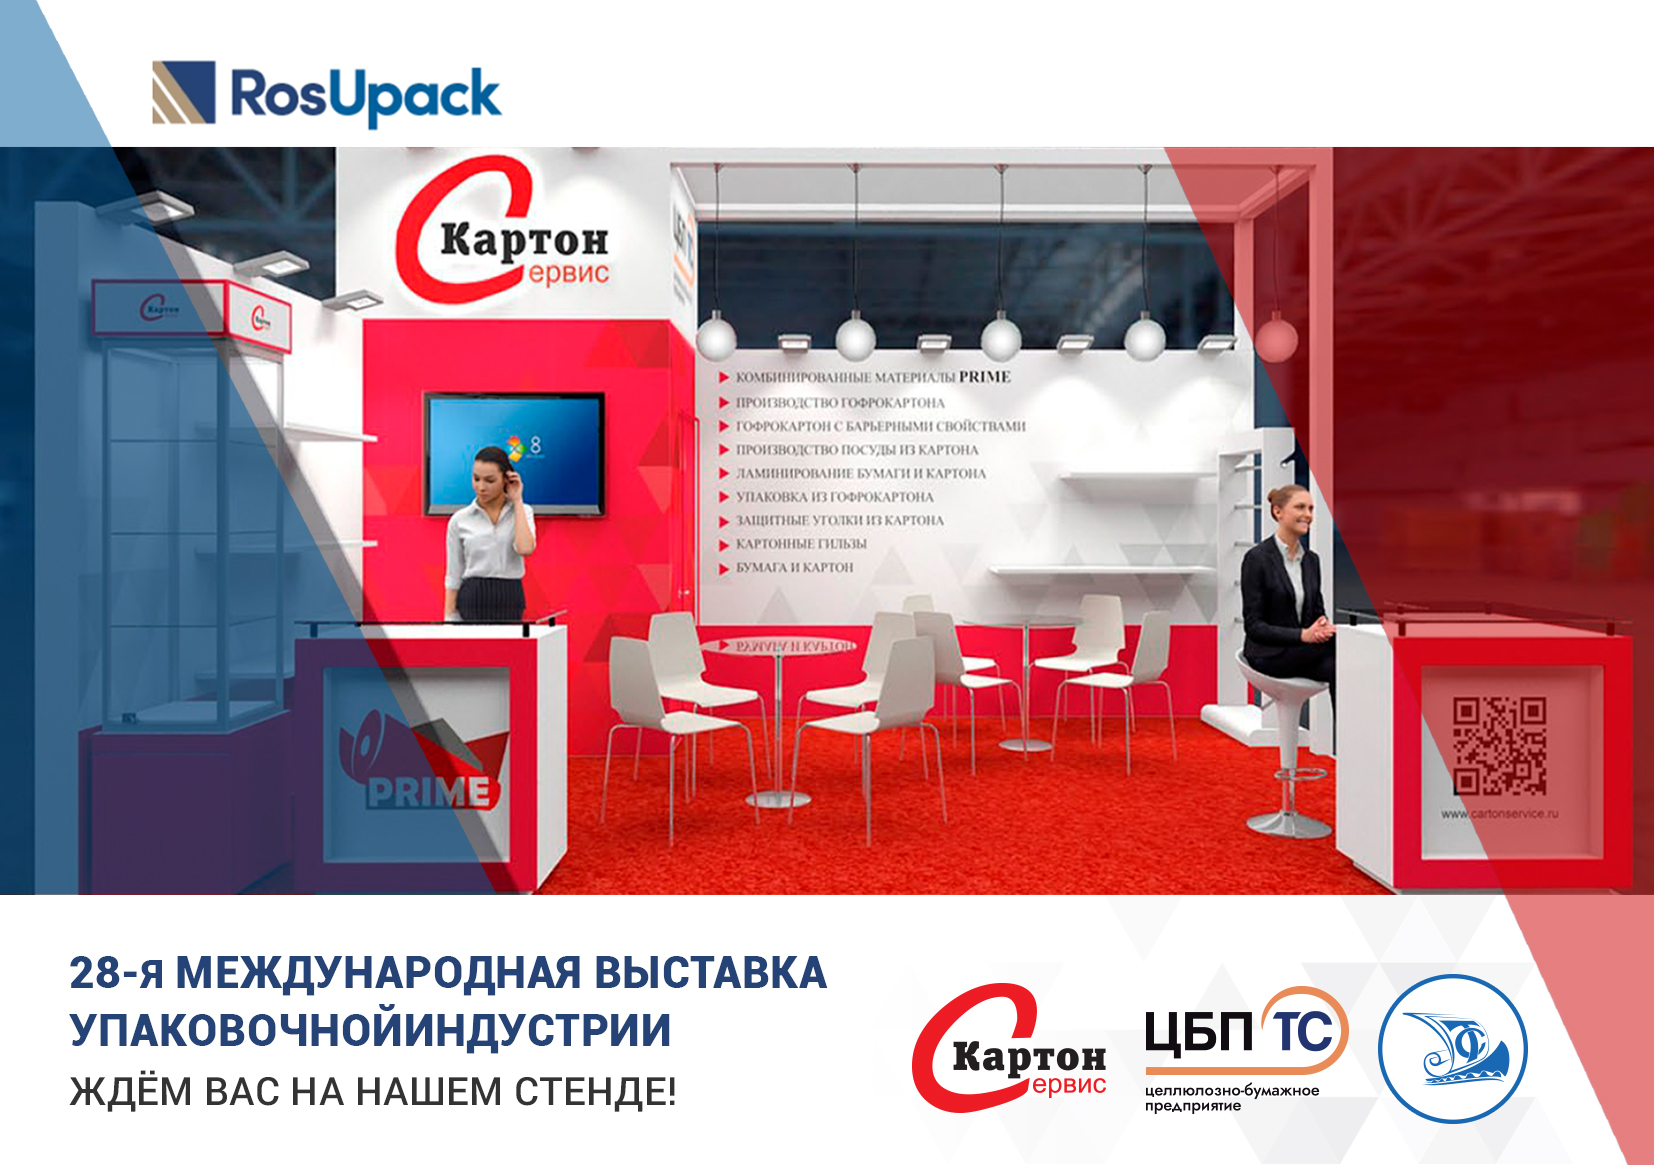 28-я Международная выставка упаковочной индустрии RosUpack